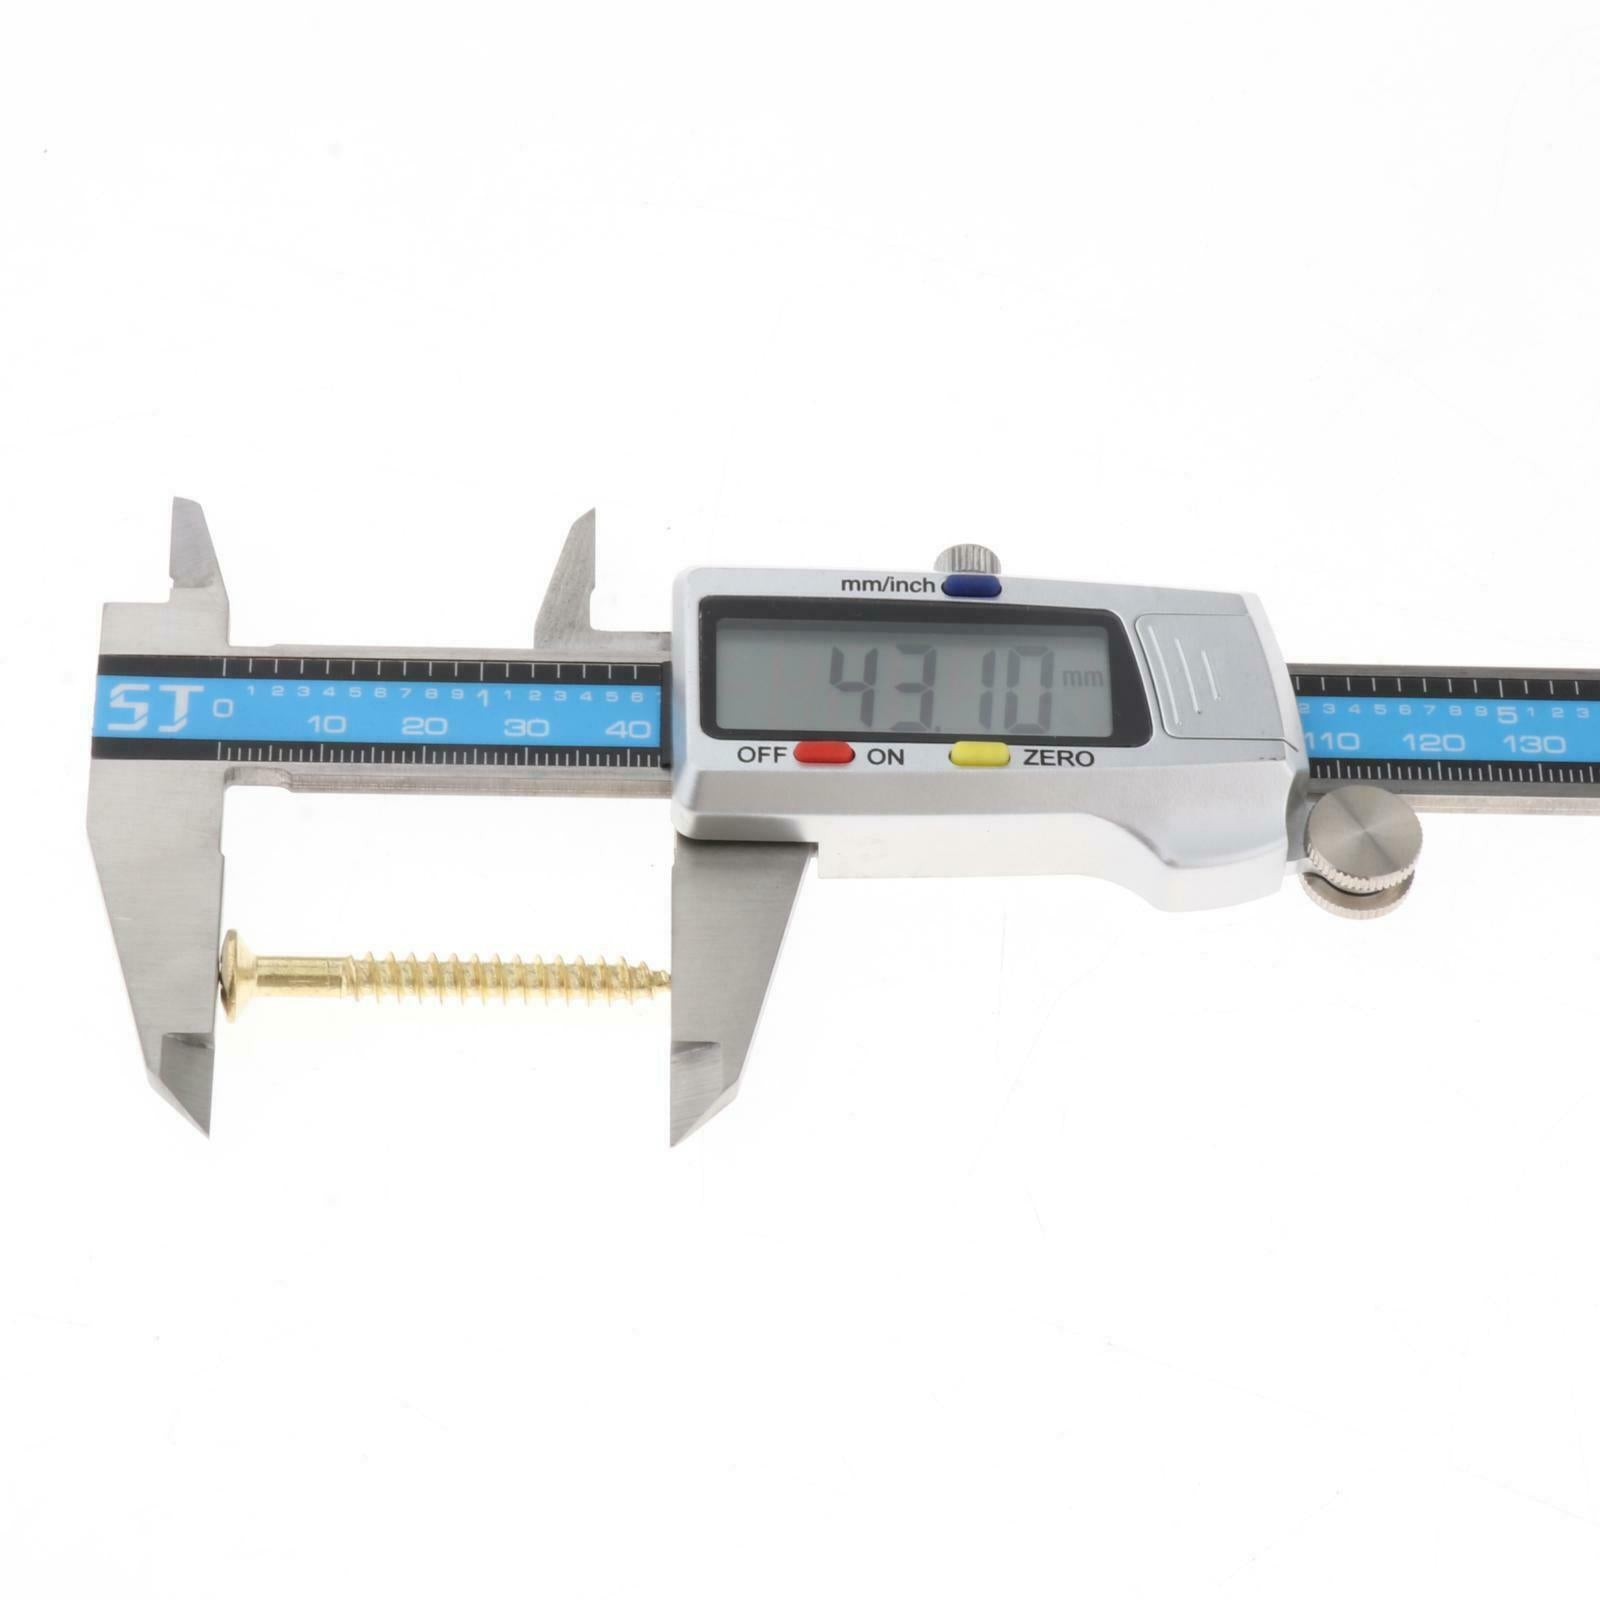 Digital Vernier Caliper Micrometer Electronic Tool Large LCD Screen Ruler